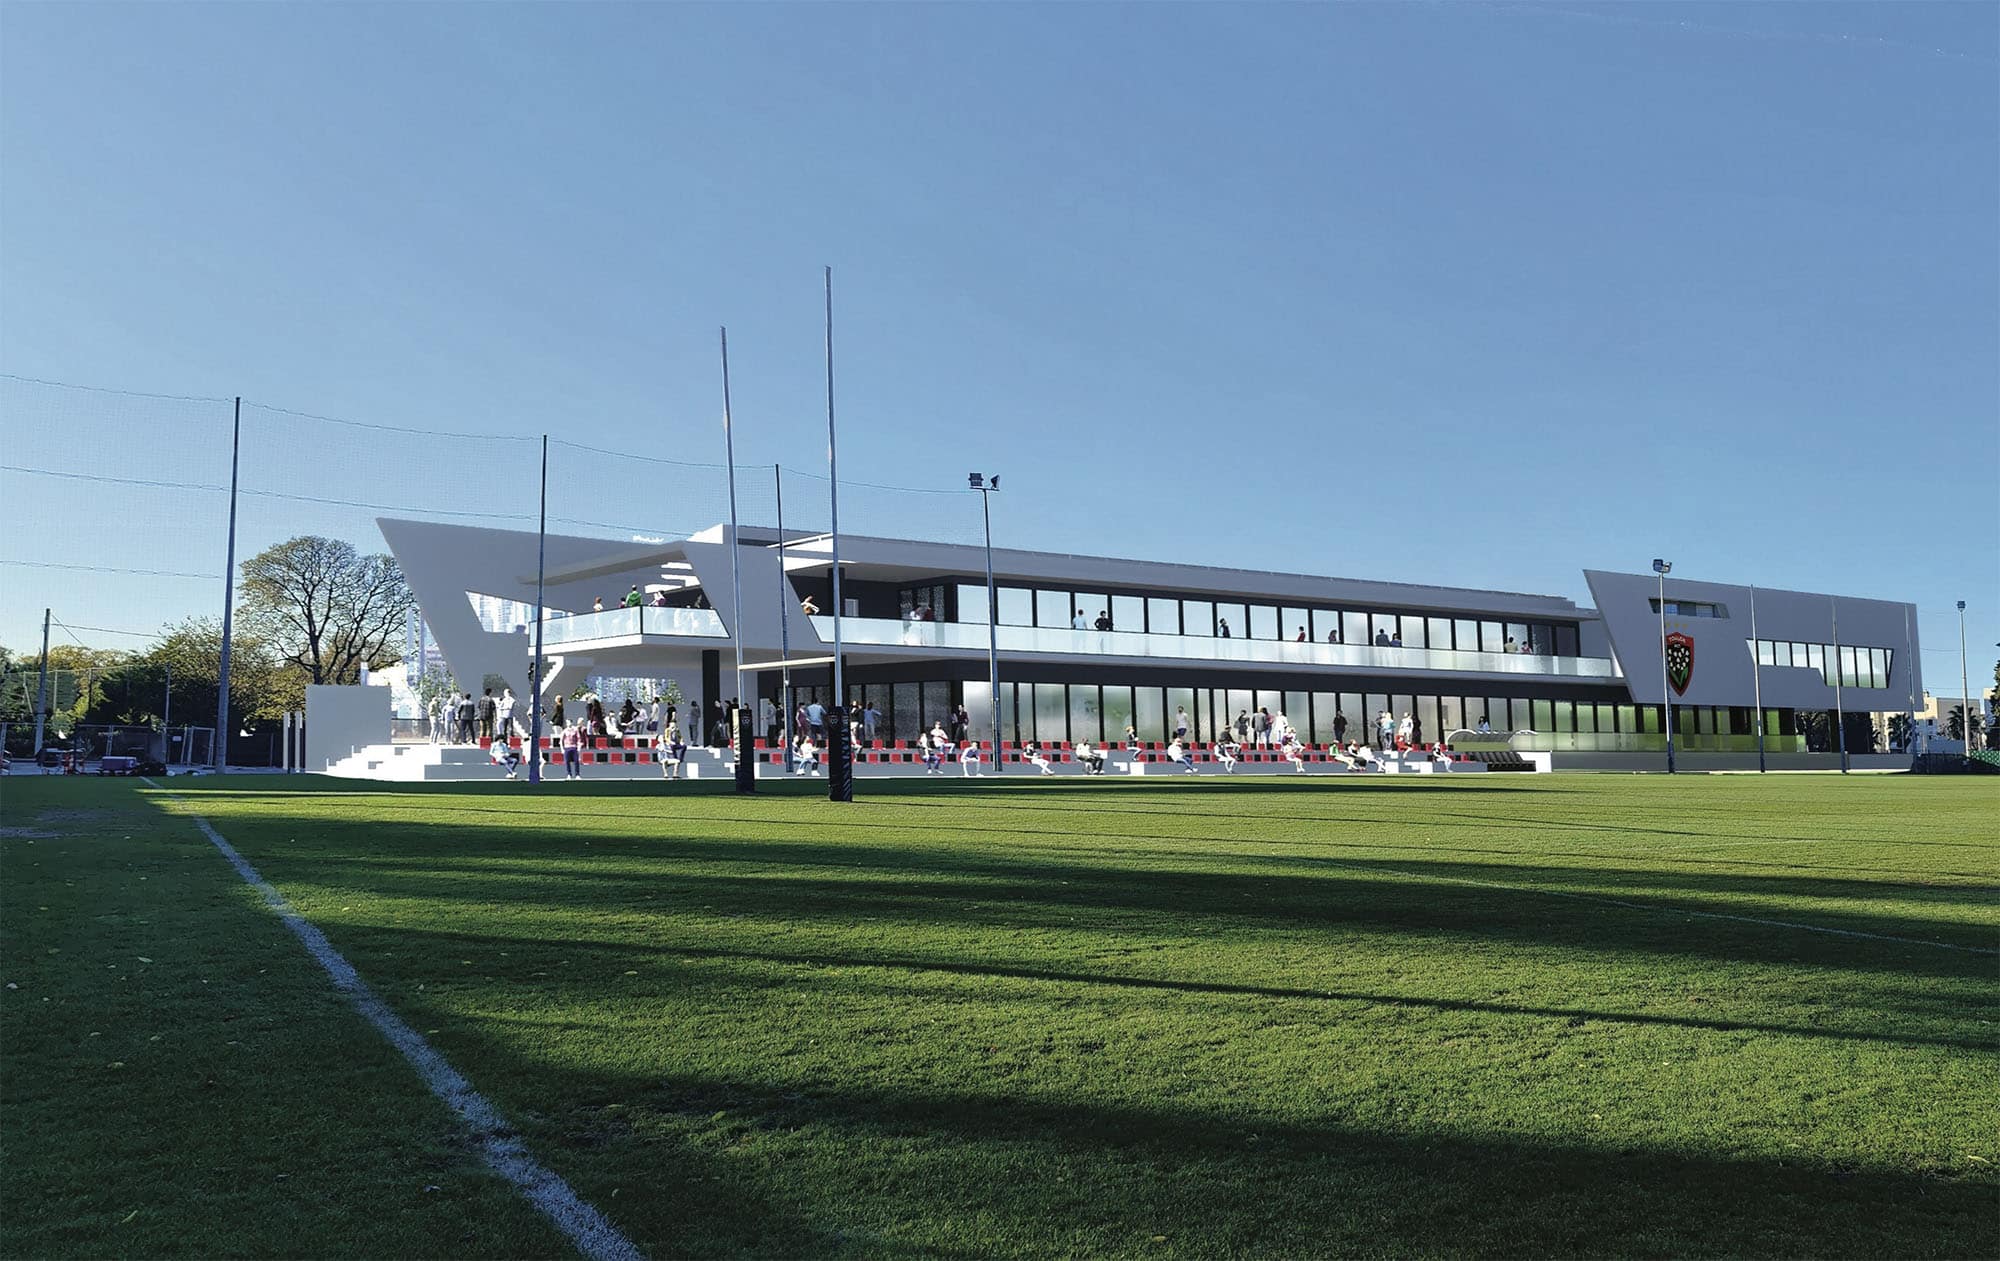 le campus du Rugby Club Toulonnais vous ouvre ses portes et accueille vos évènements d’entreprise Affaires dans une ambiance conviviale.